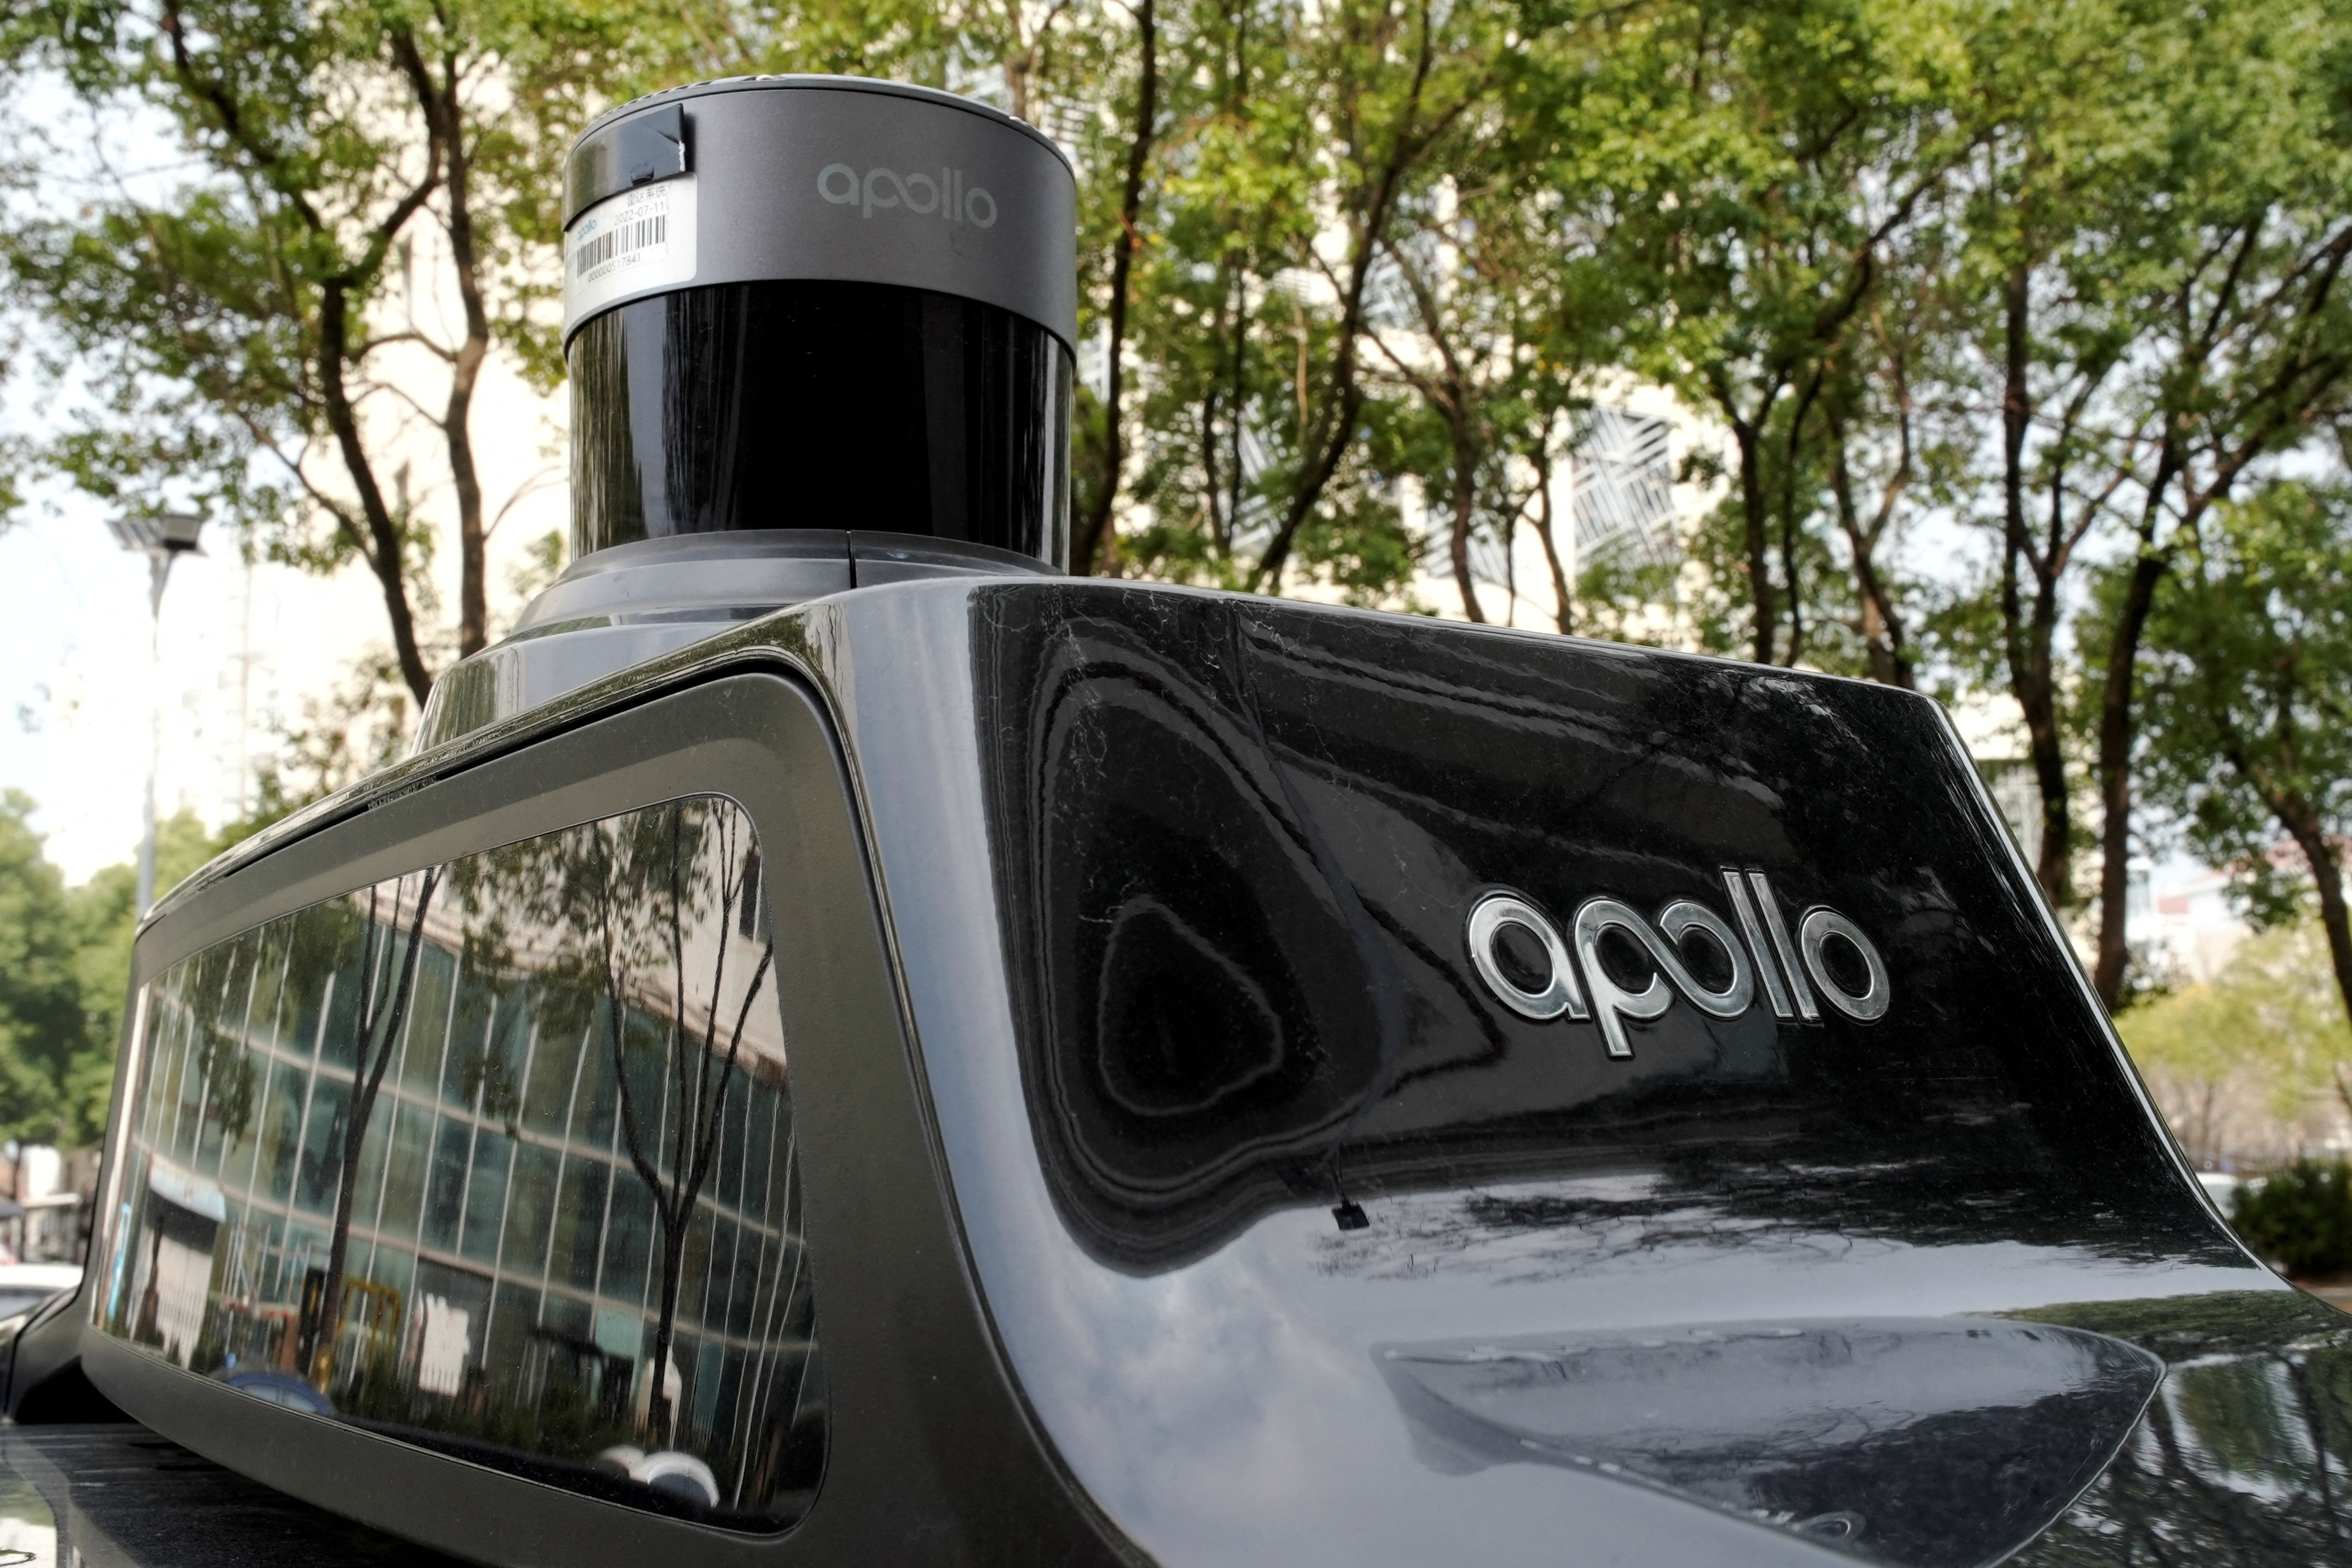 Baidu's driverless robotaxi service Apollo Go in Wuhan